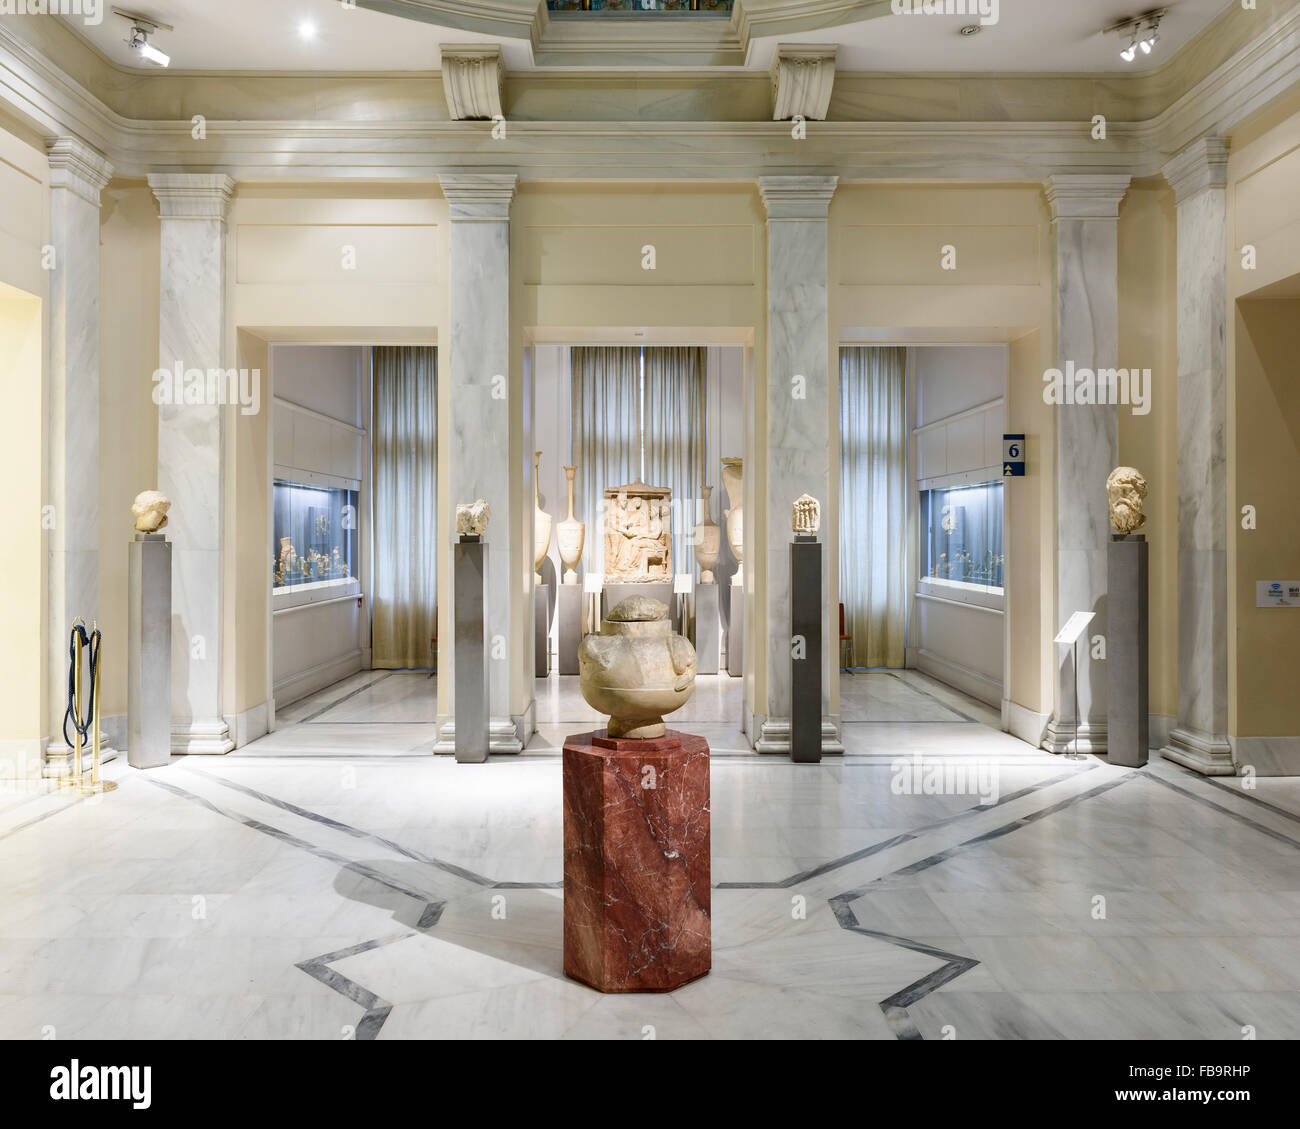 El Museo Benaki, fundado en 1930. Incluye el arte griego de todas las épocas. Instituciones de Athens, Atenas, Grecia. Arquitecto: N/A, 2015. Foto de stock